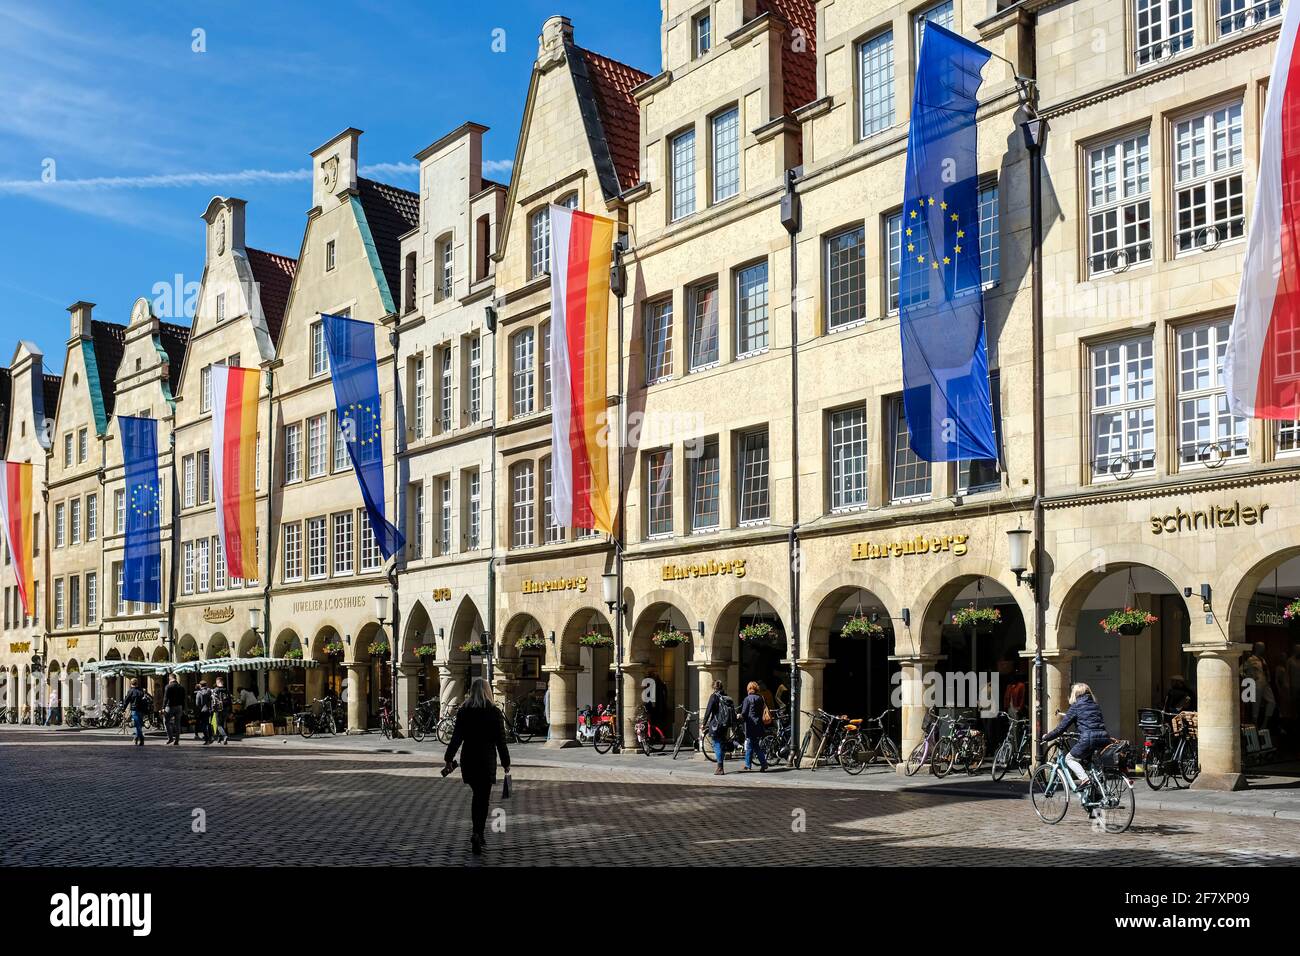 13.05.2019, Muenster, Nordrhein-Westfalen, Deutschland -Radfahrer und Fussgaenger auf dem Prinzipalmarkt in Muenster Stock Photo